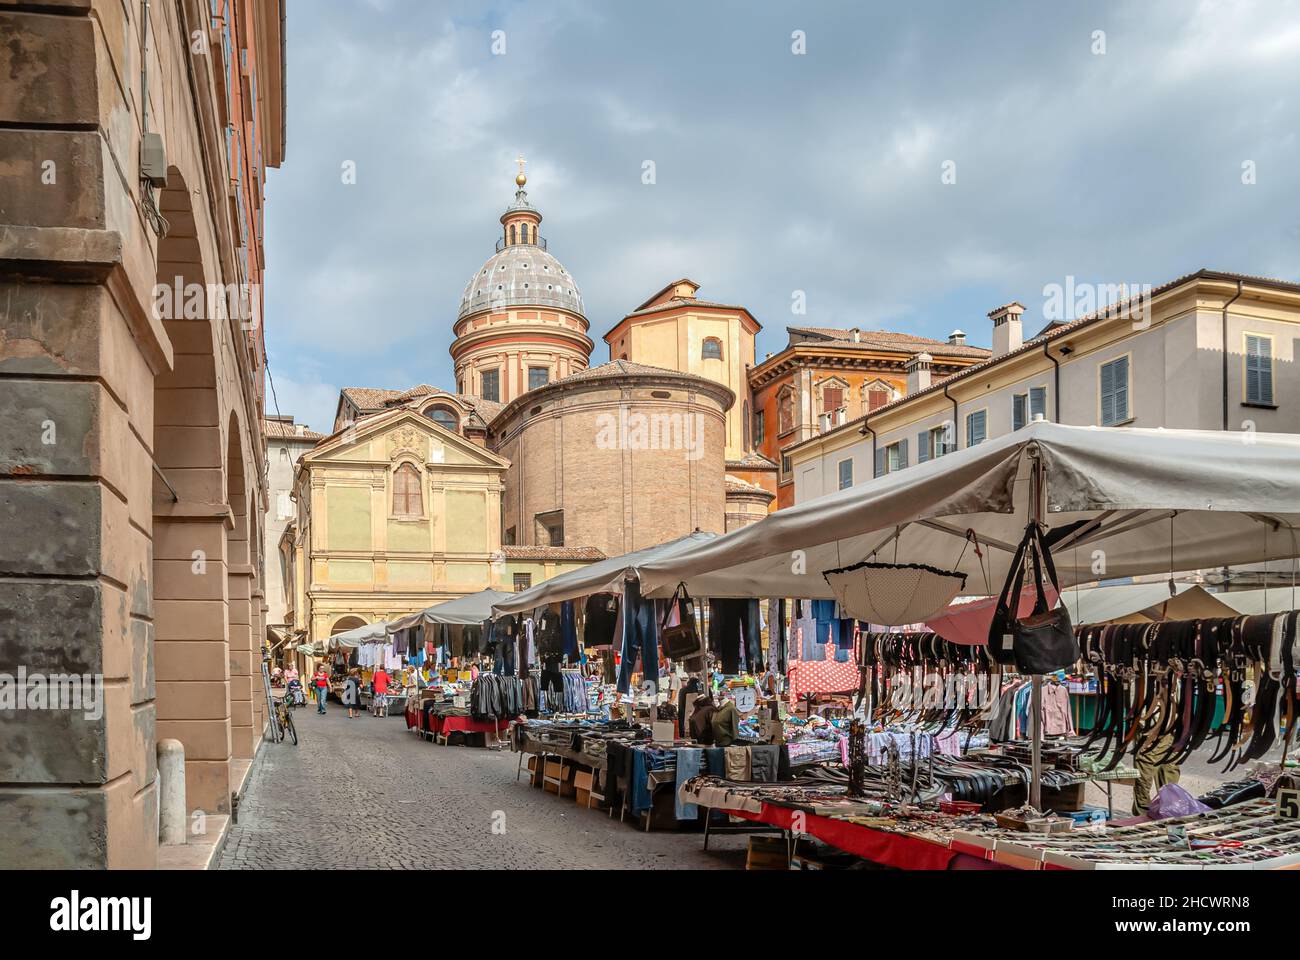 Street market at the Piazza San Prospero in Reggio Emilia, North Italy Stock Photo